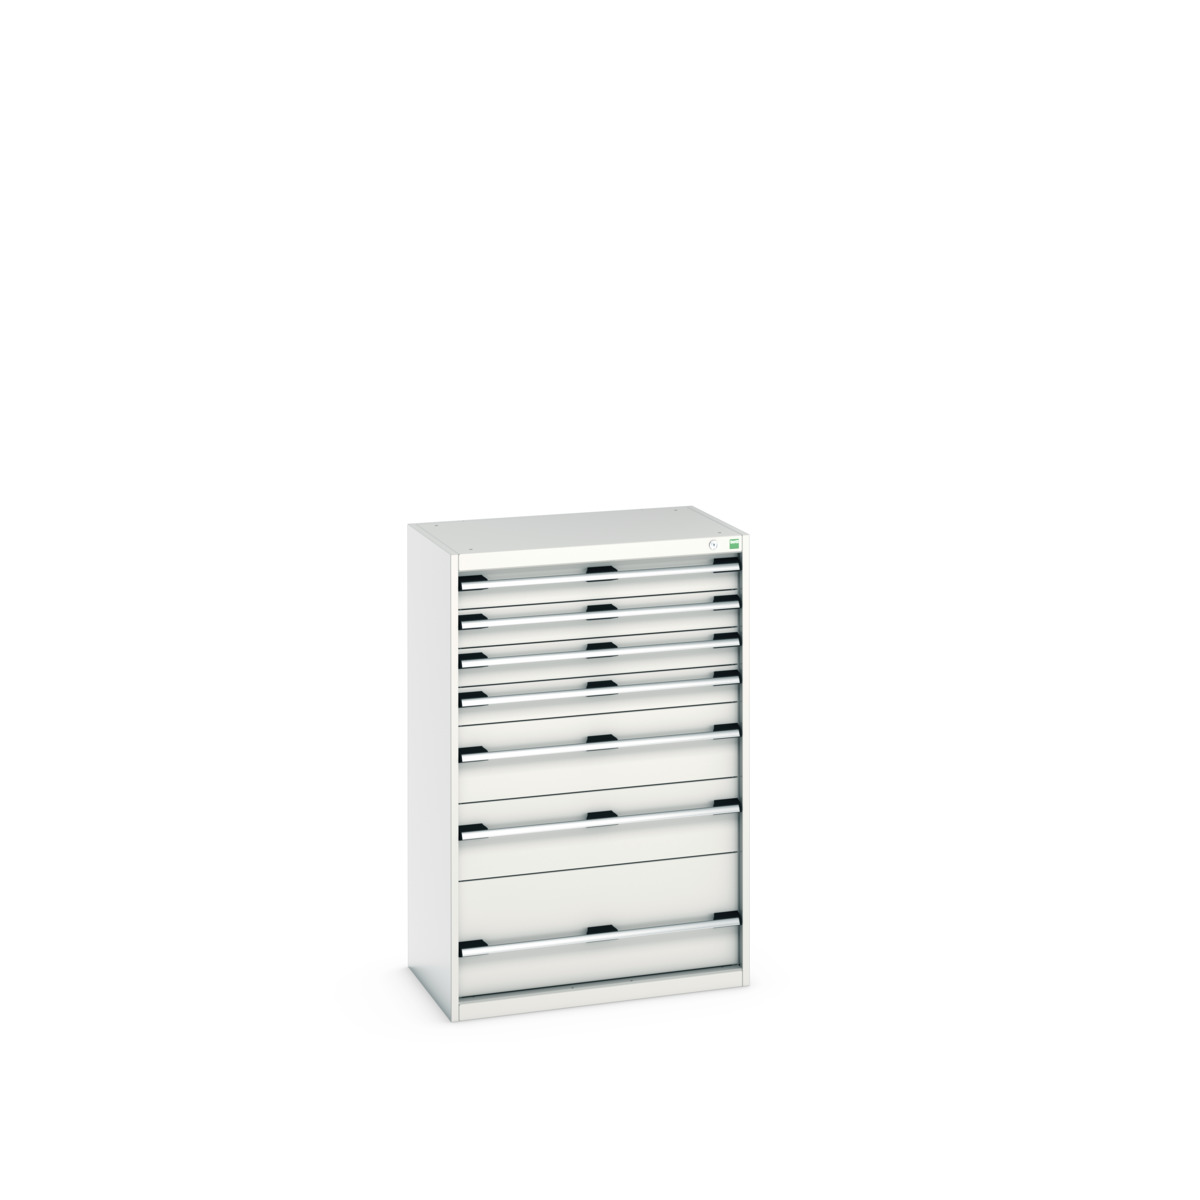 40012104.16V - cubio drawer cabinet